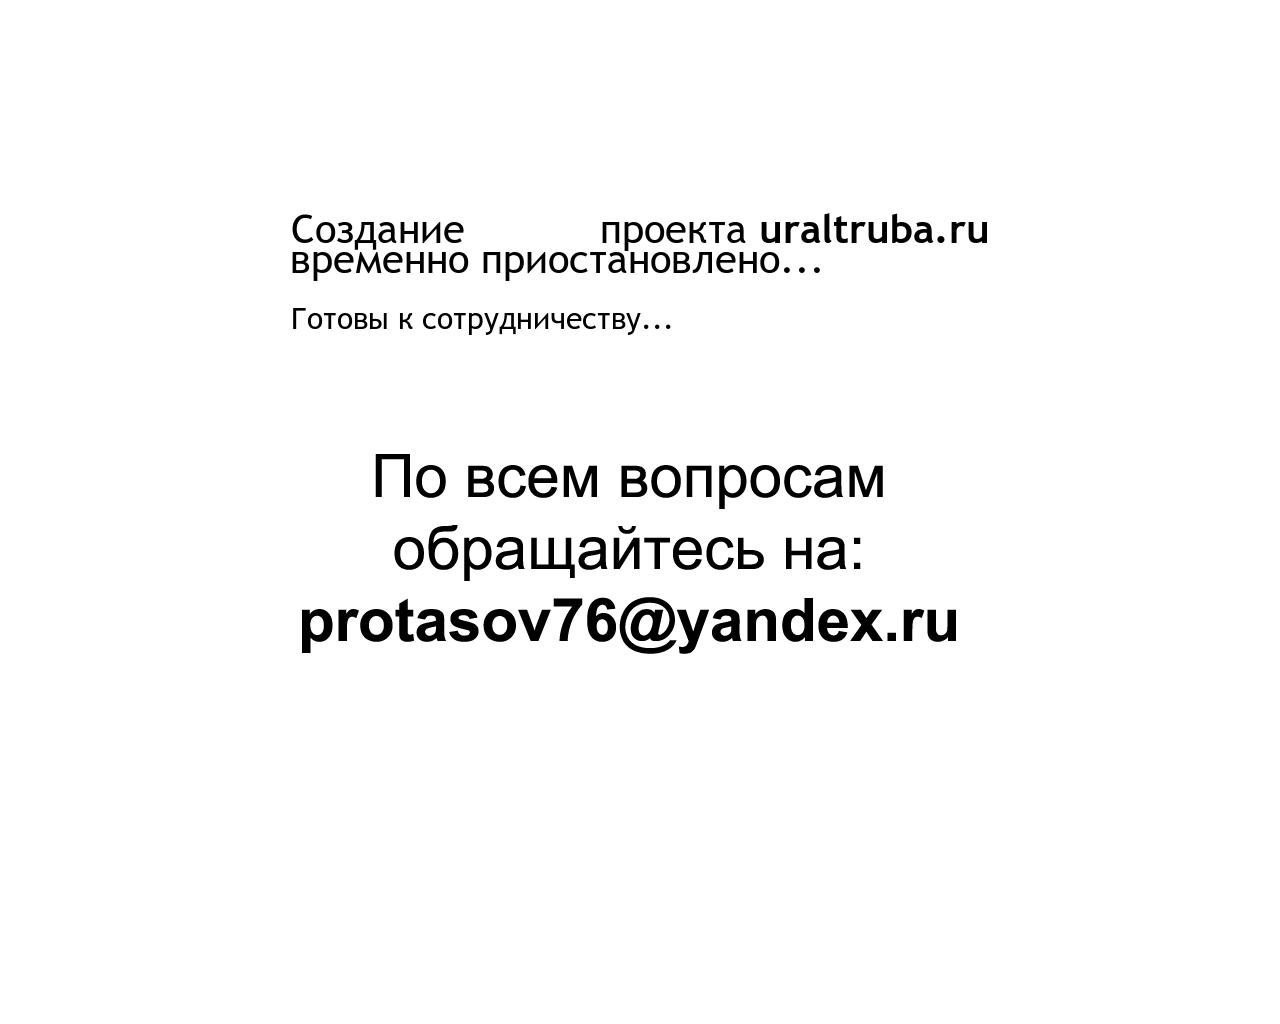 Изображение сайта uraltruba.ru в разрешении 1280x1024